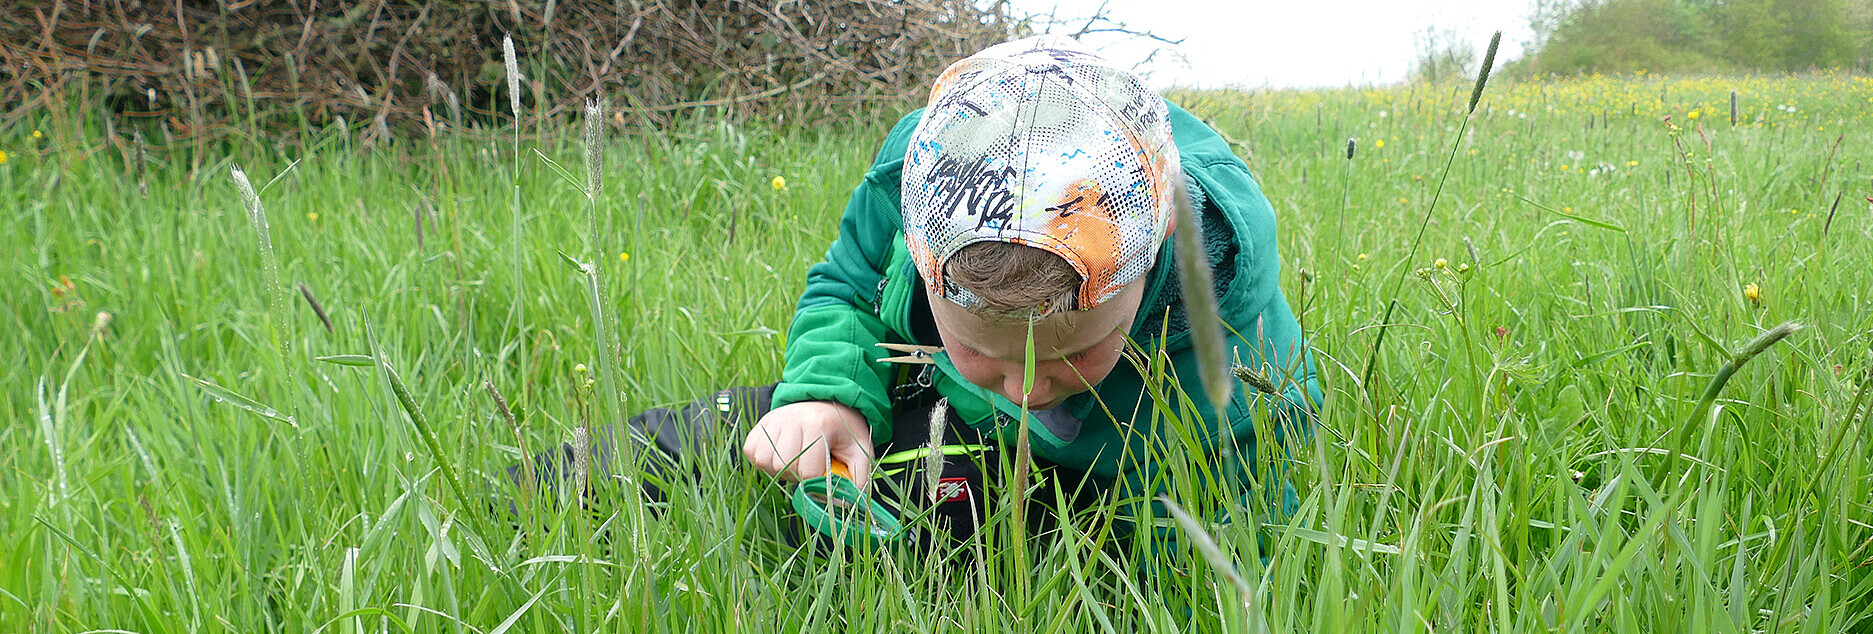 Kind liegt im Gras und entdeckt die Wiese mit einer grünen Lupe. Das Kind trägt eine bunte Mütze und eine grüne Jacke.